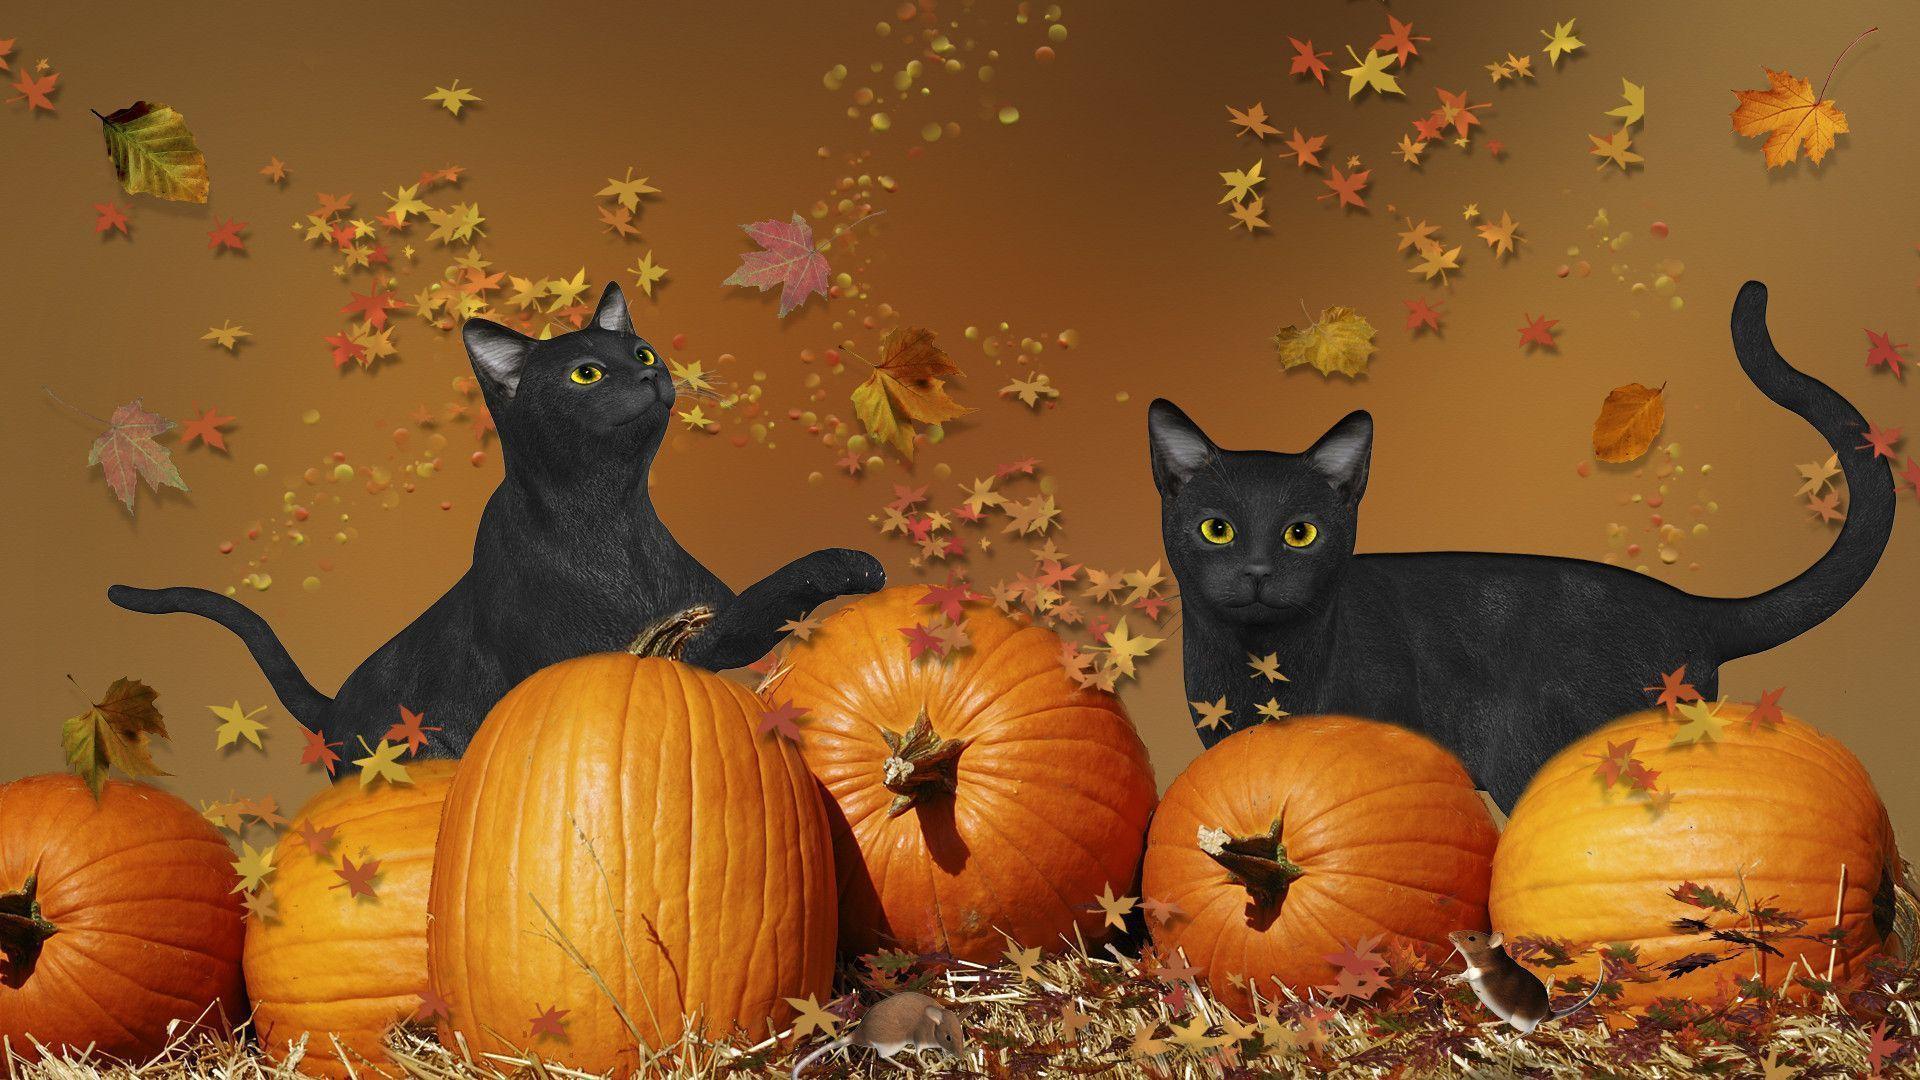 Dừng lại và nhìn vào bộ sưu tập hình nền Halloween với hình ảnh những chú mèo đen bí ẩn. Hãy trang trí máy tính của bạn với những hình ảnh đầy quyến rũ và hấp dẫn này.